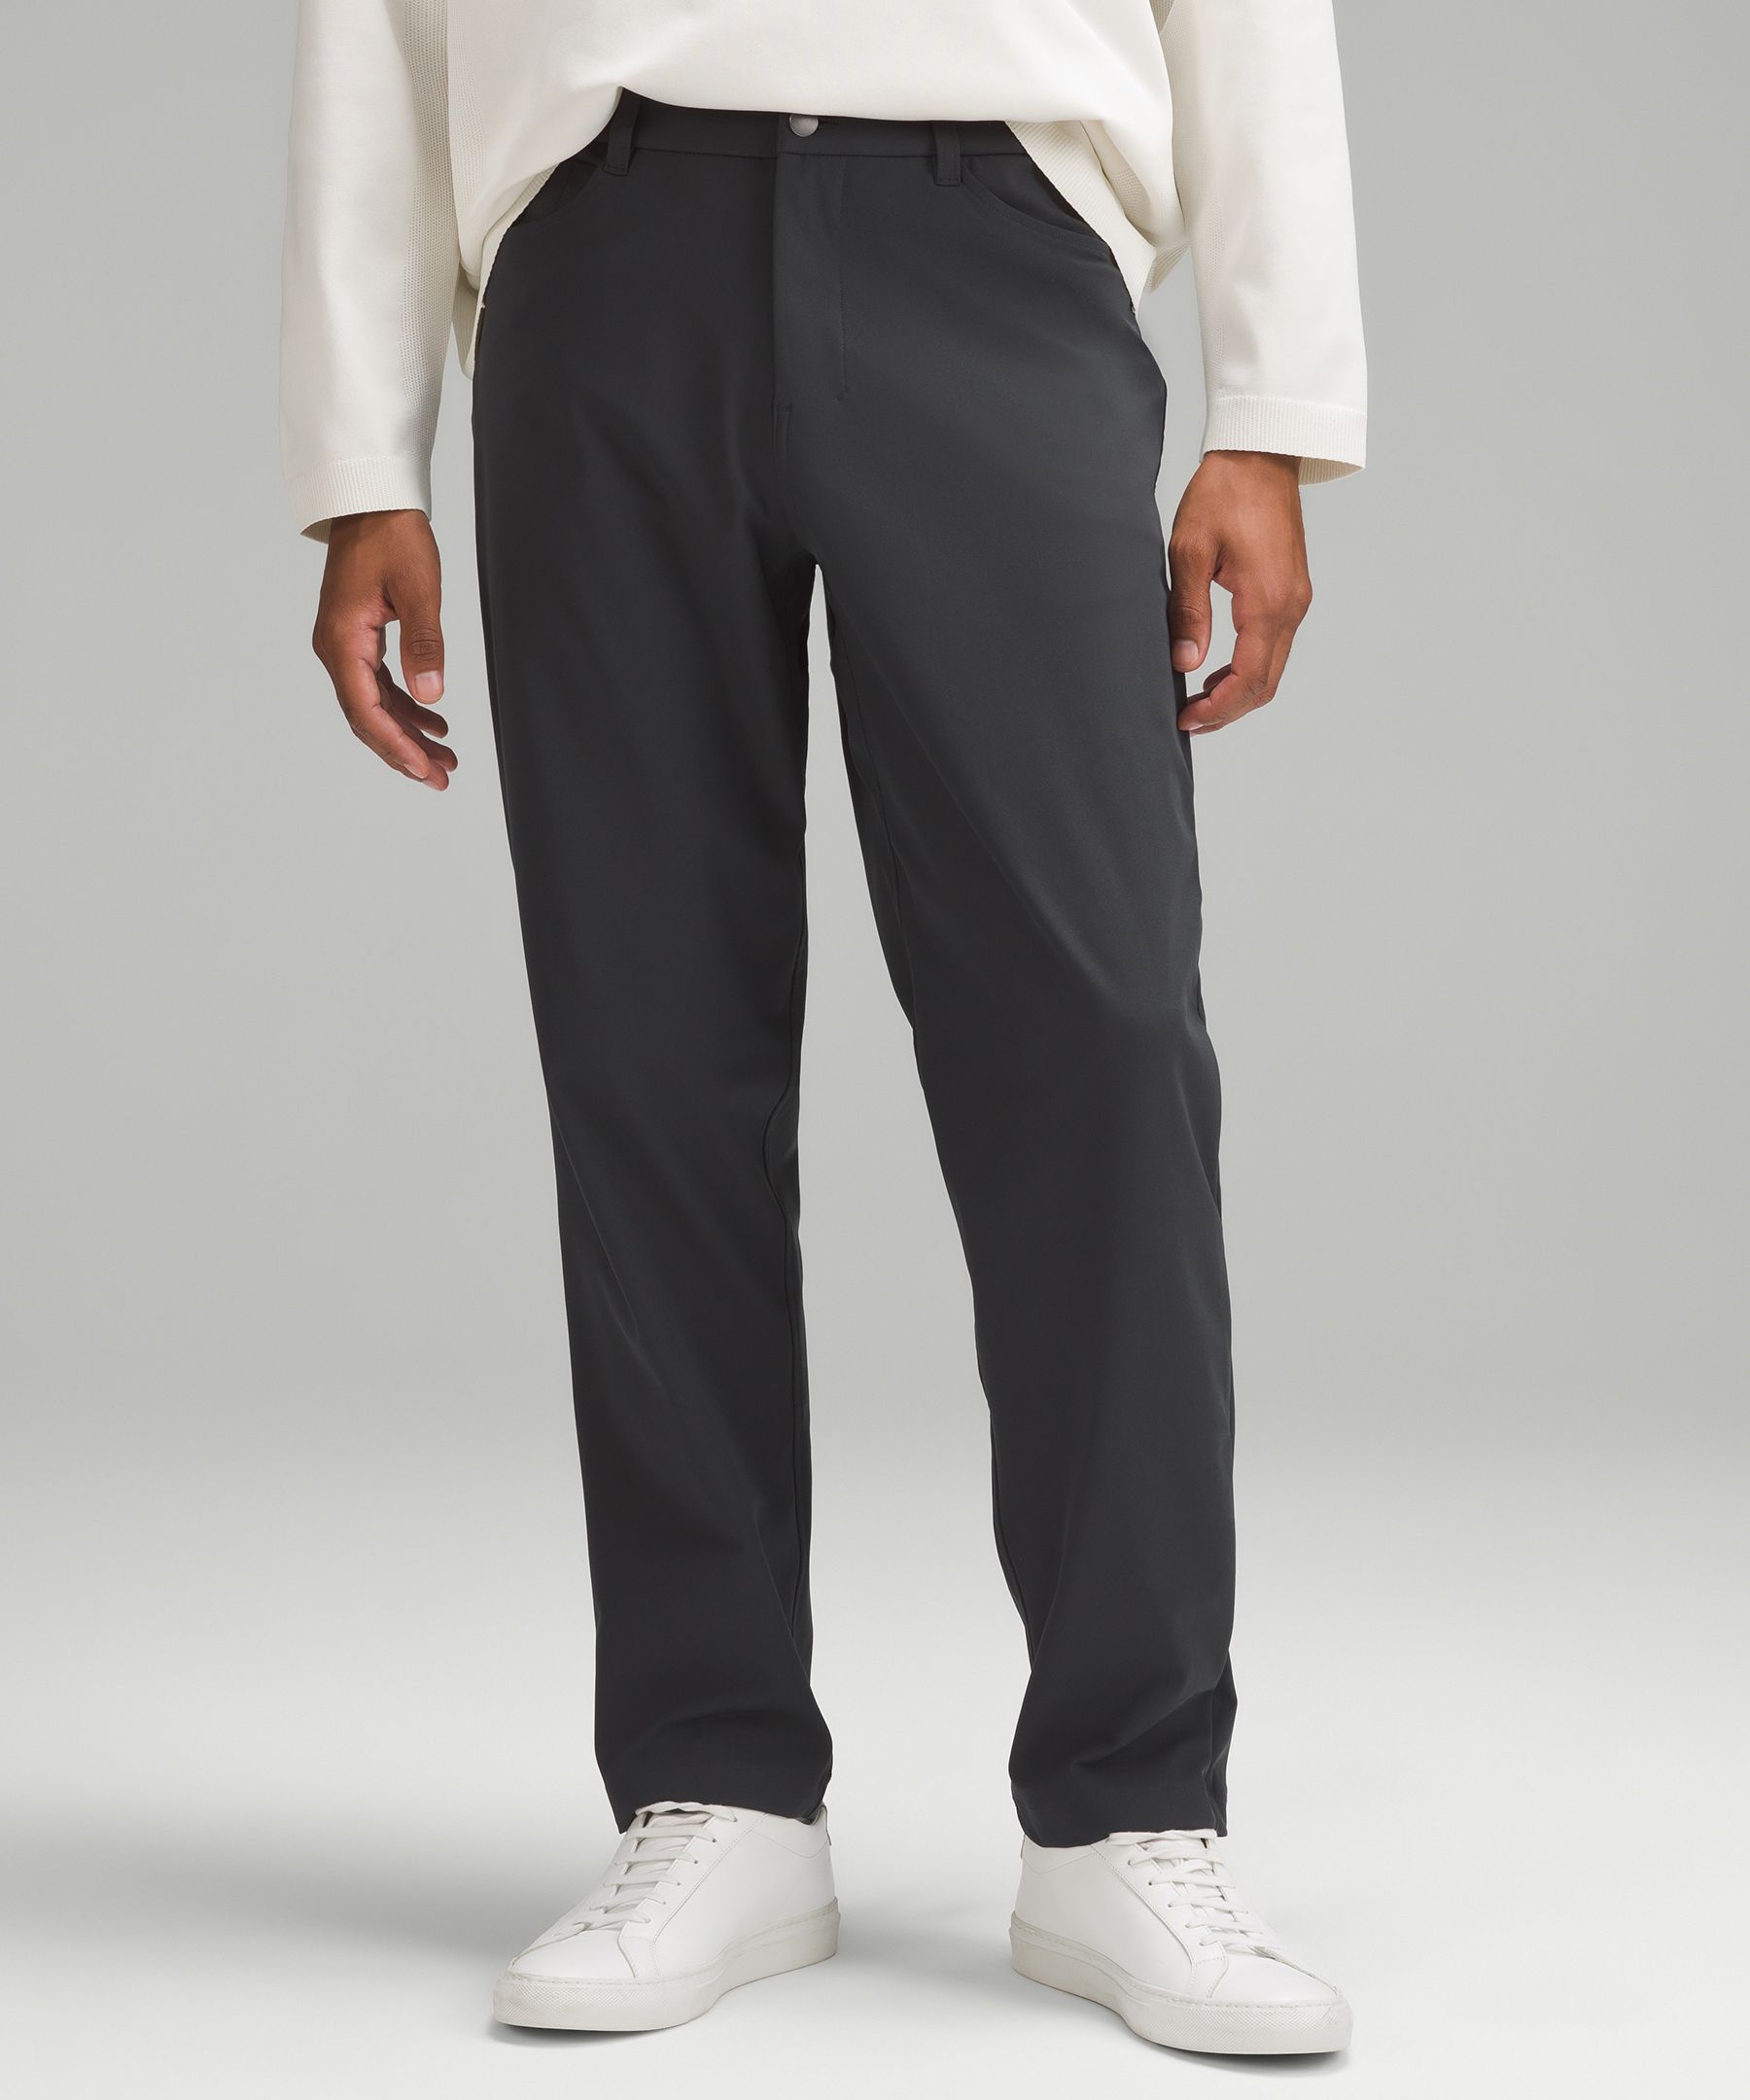 lululemon athletica Abc Classic-fit 5 Pocket Trousers 30l